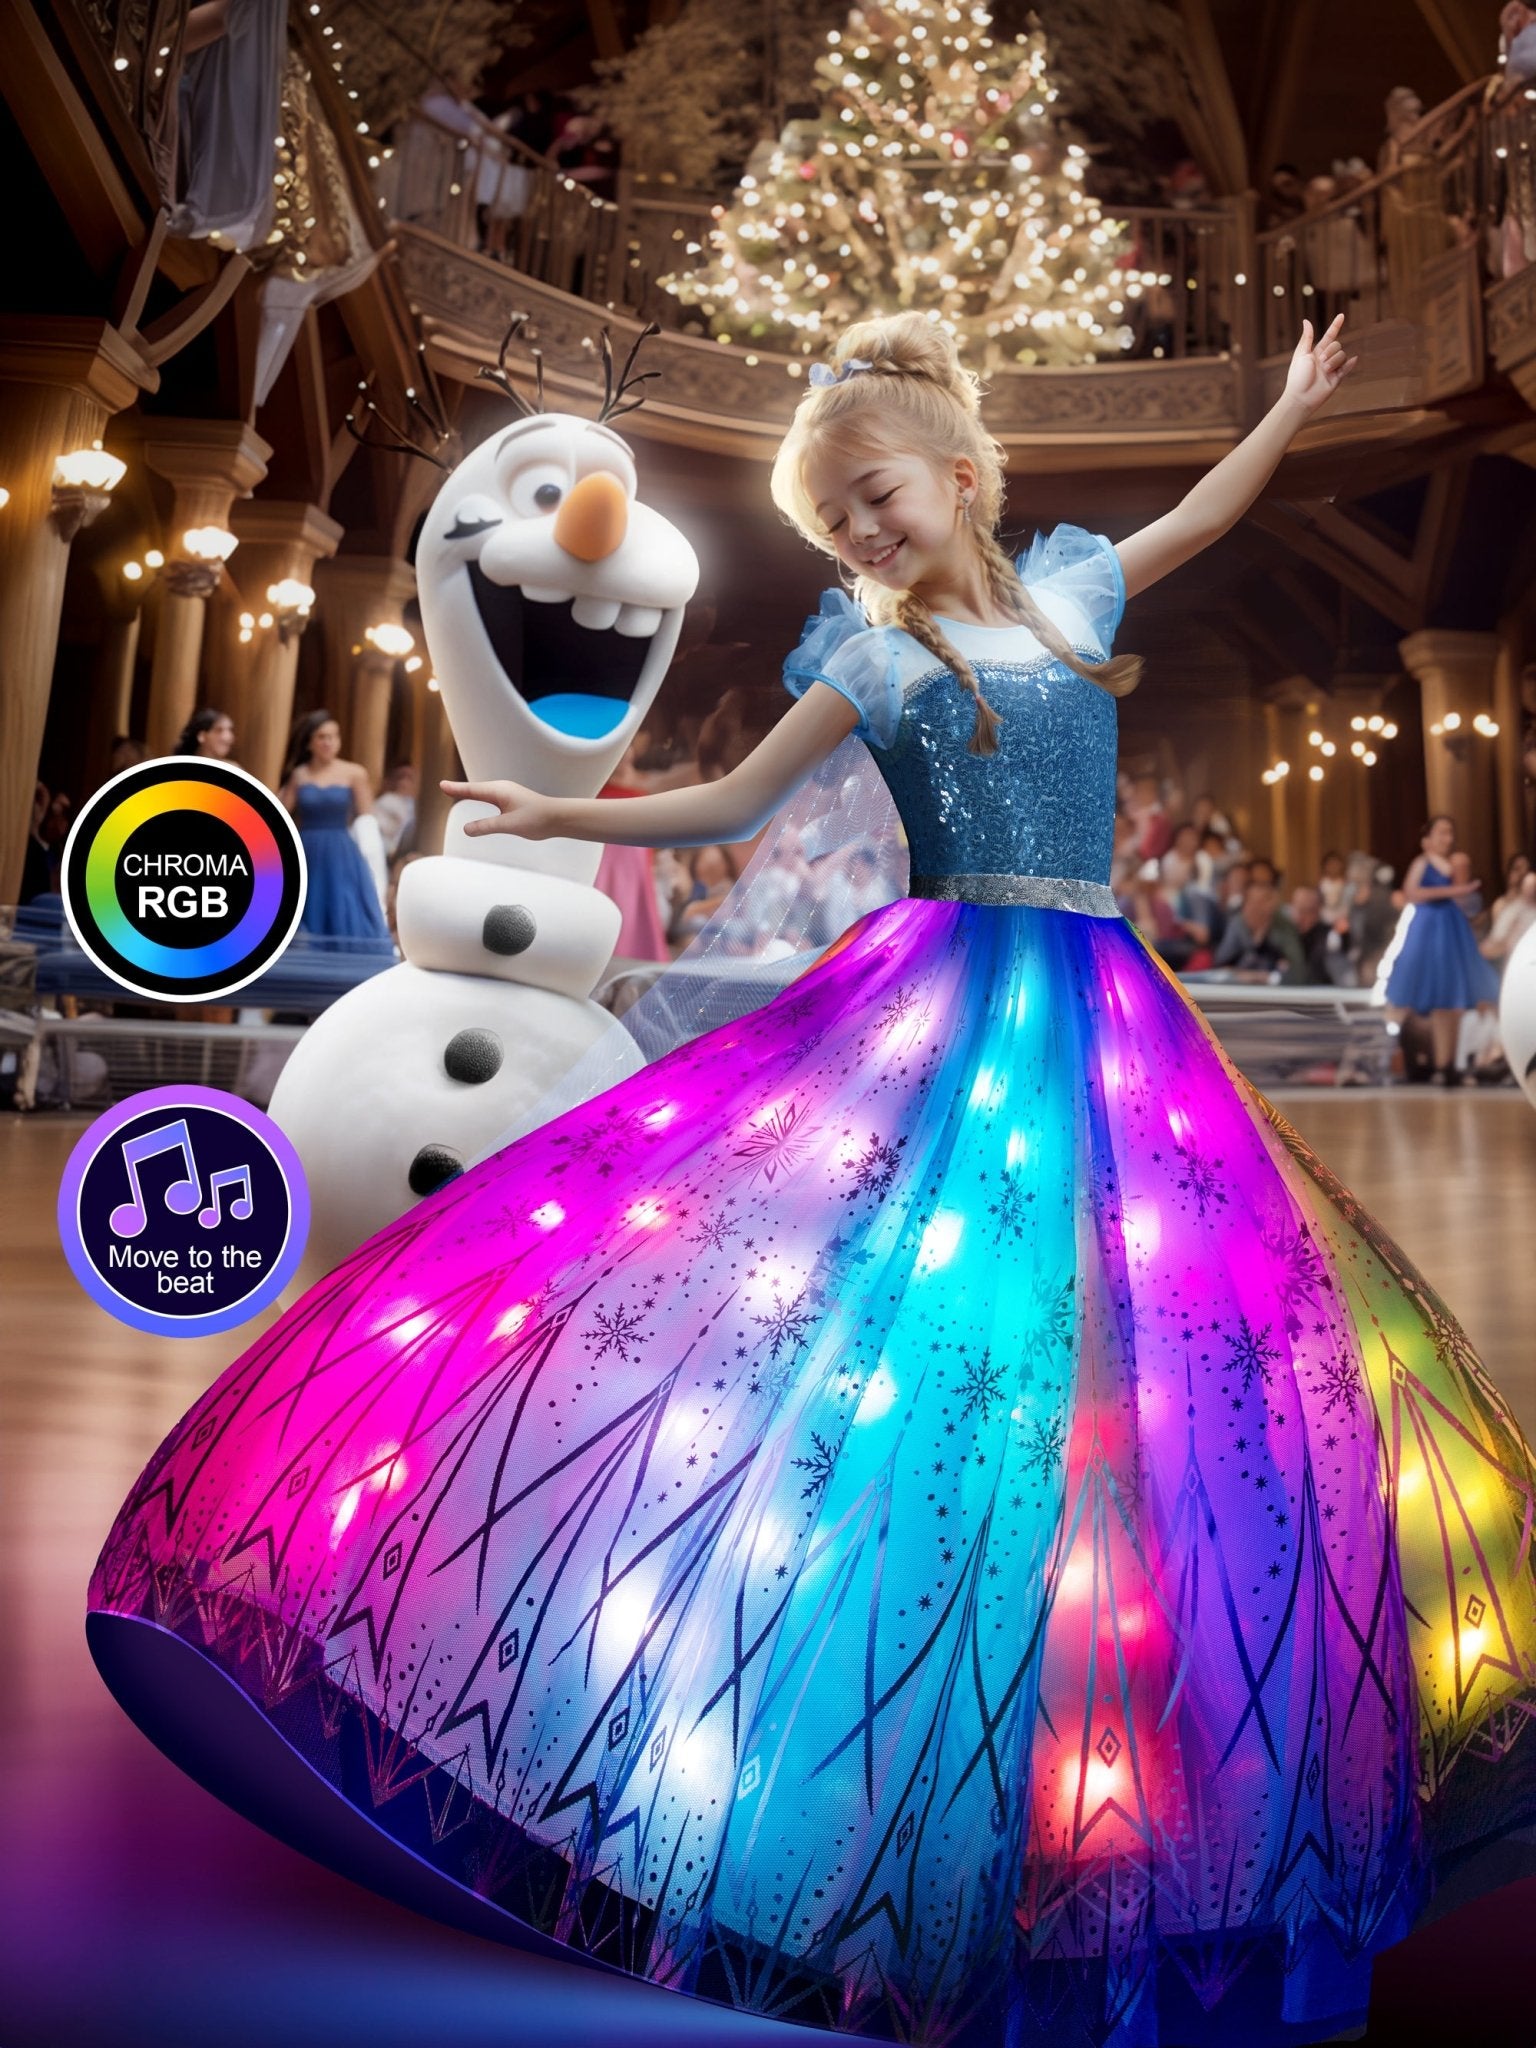 Light Up Snow Princess Costume For Girl - Uporpor